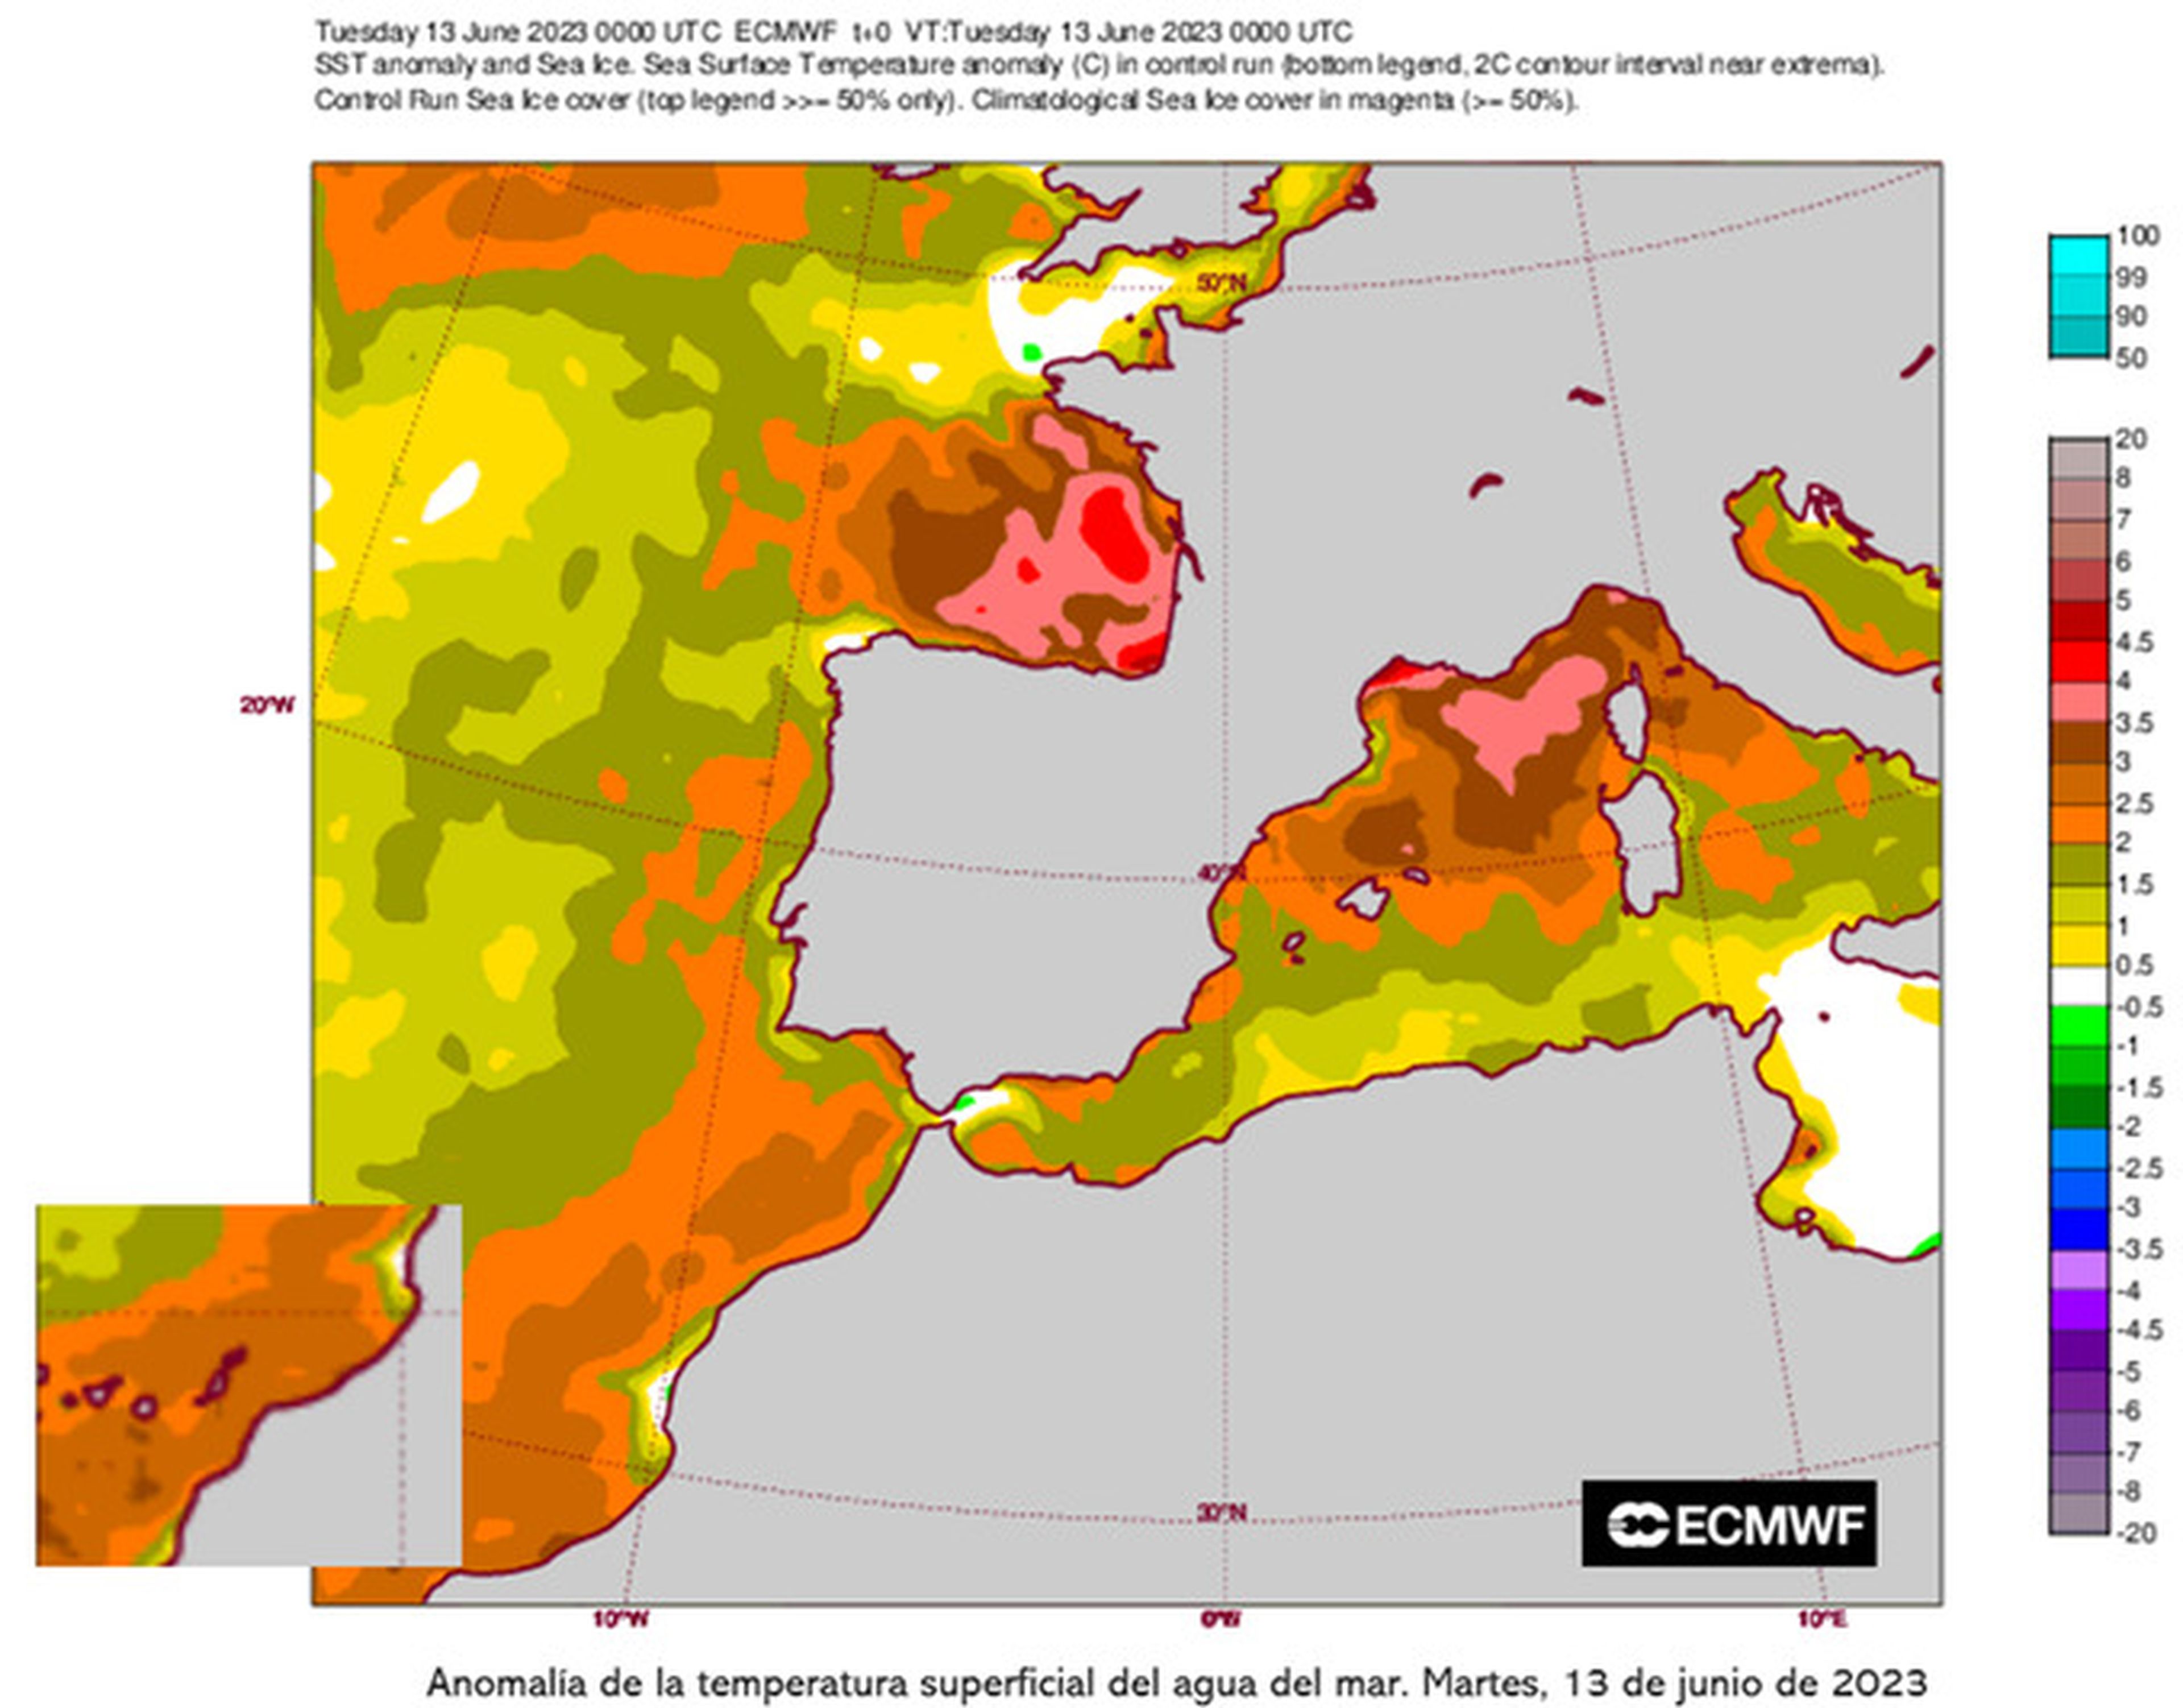 Anomalía de la temperatura superficial del agua del mar el pasado 13 de junio.